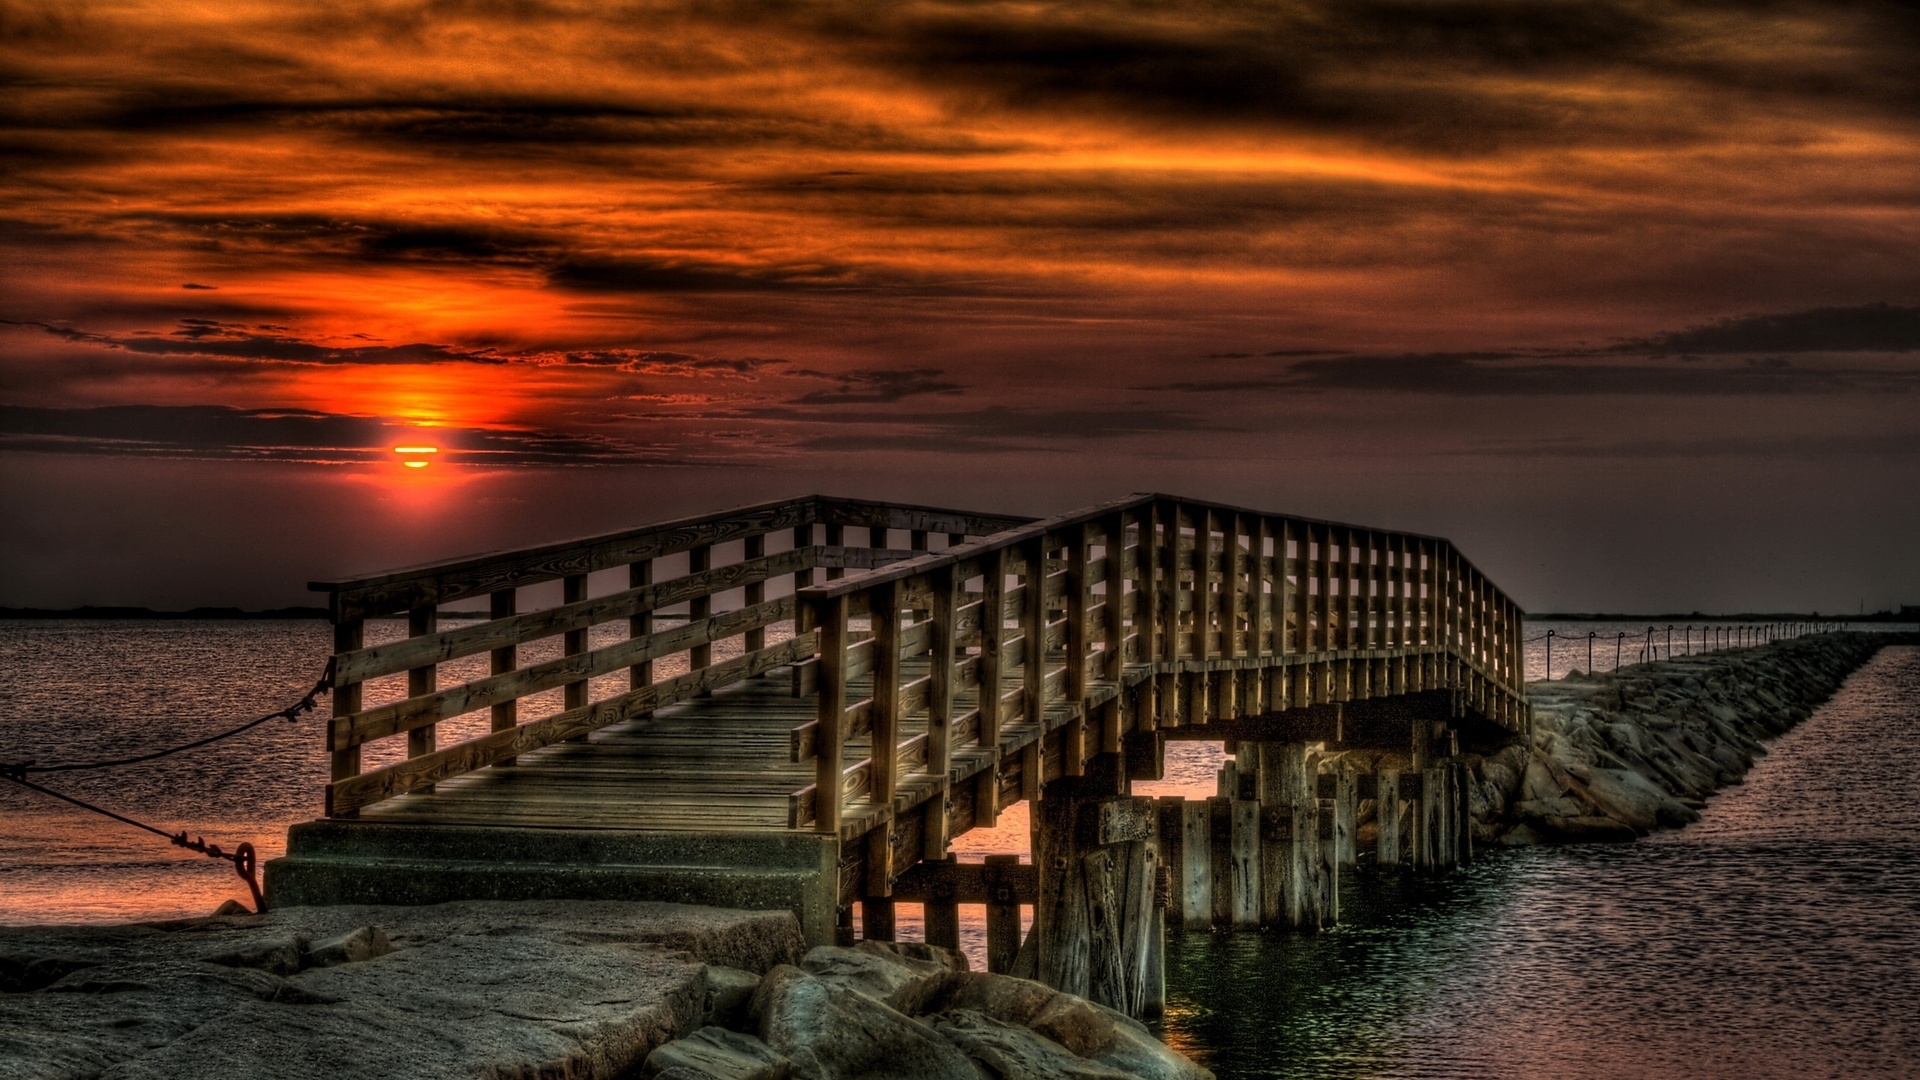 Download mobile wallpaper Landscape, Sunset, Bridges for free.